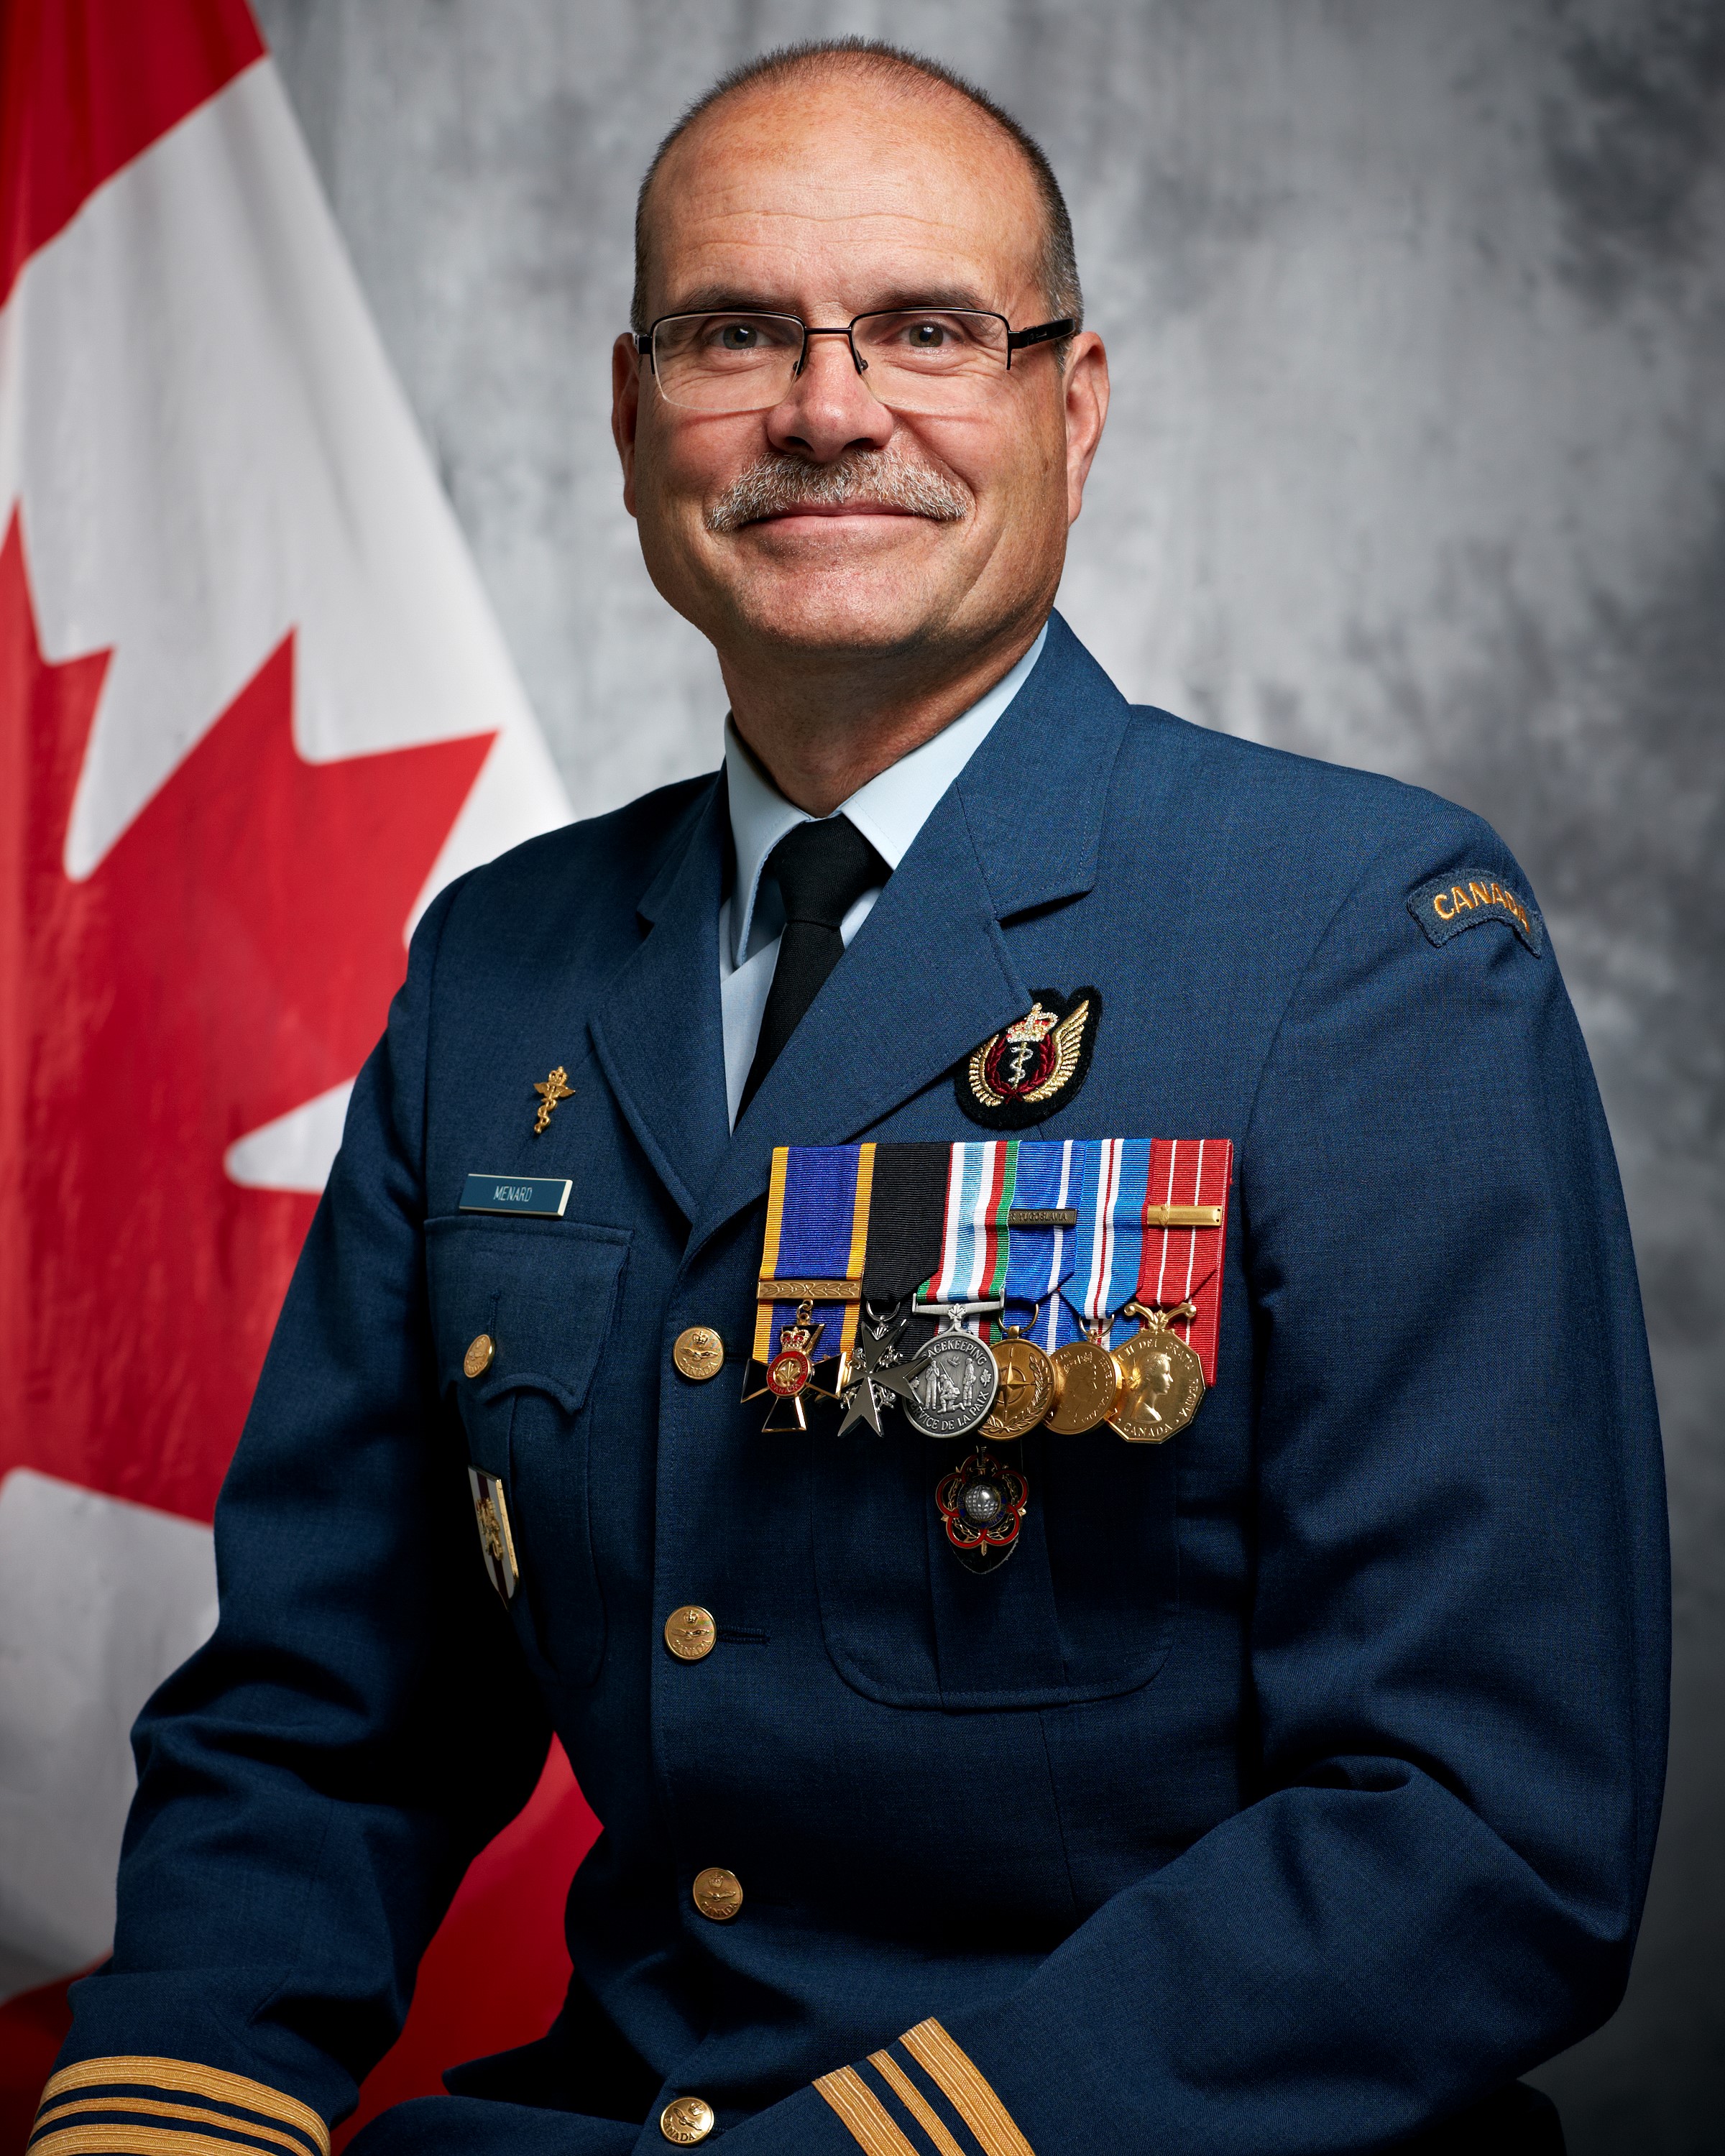 Major (Retired) Darrel Menard